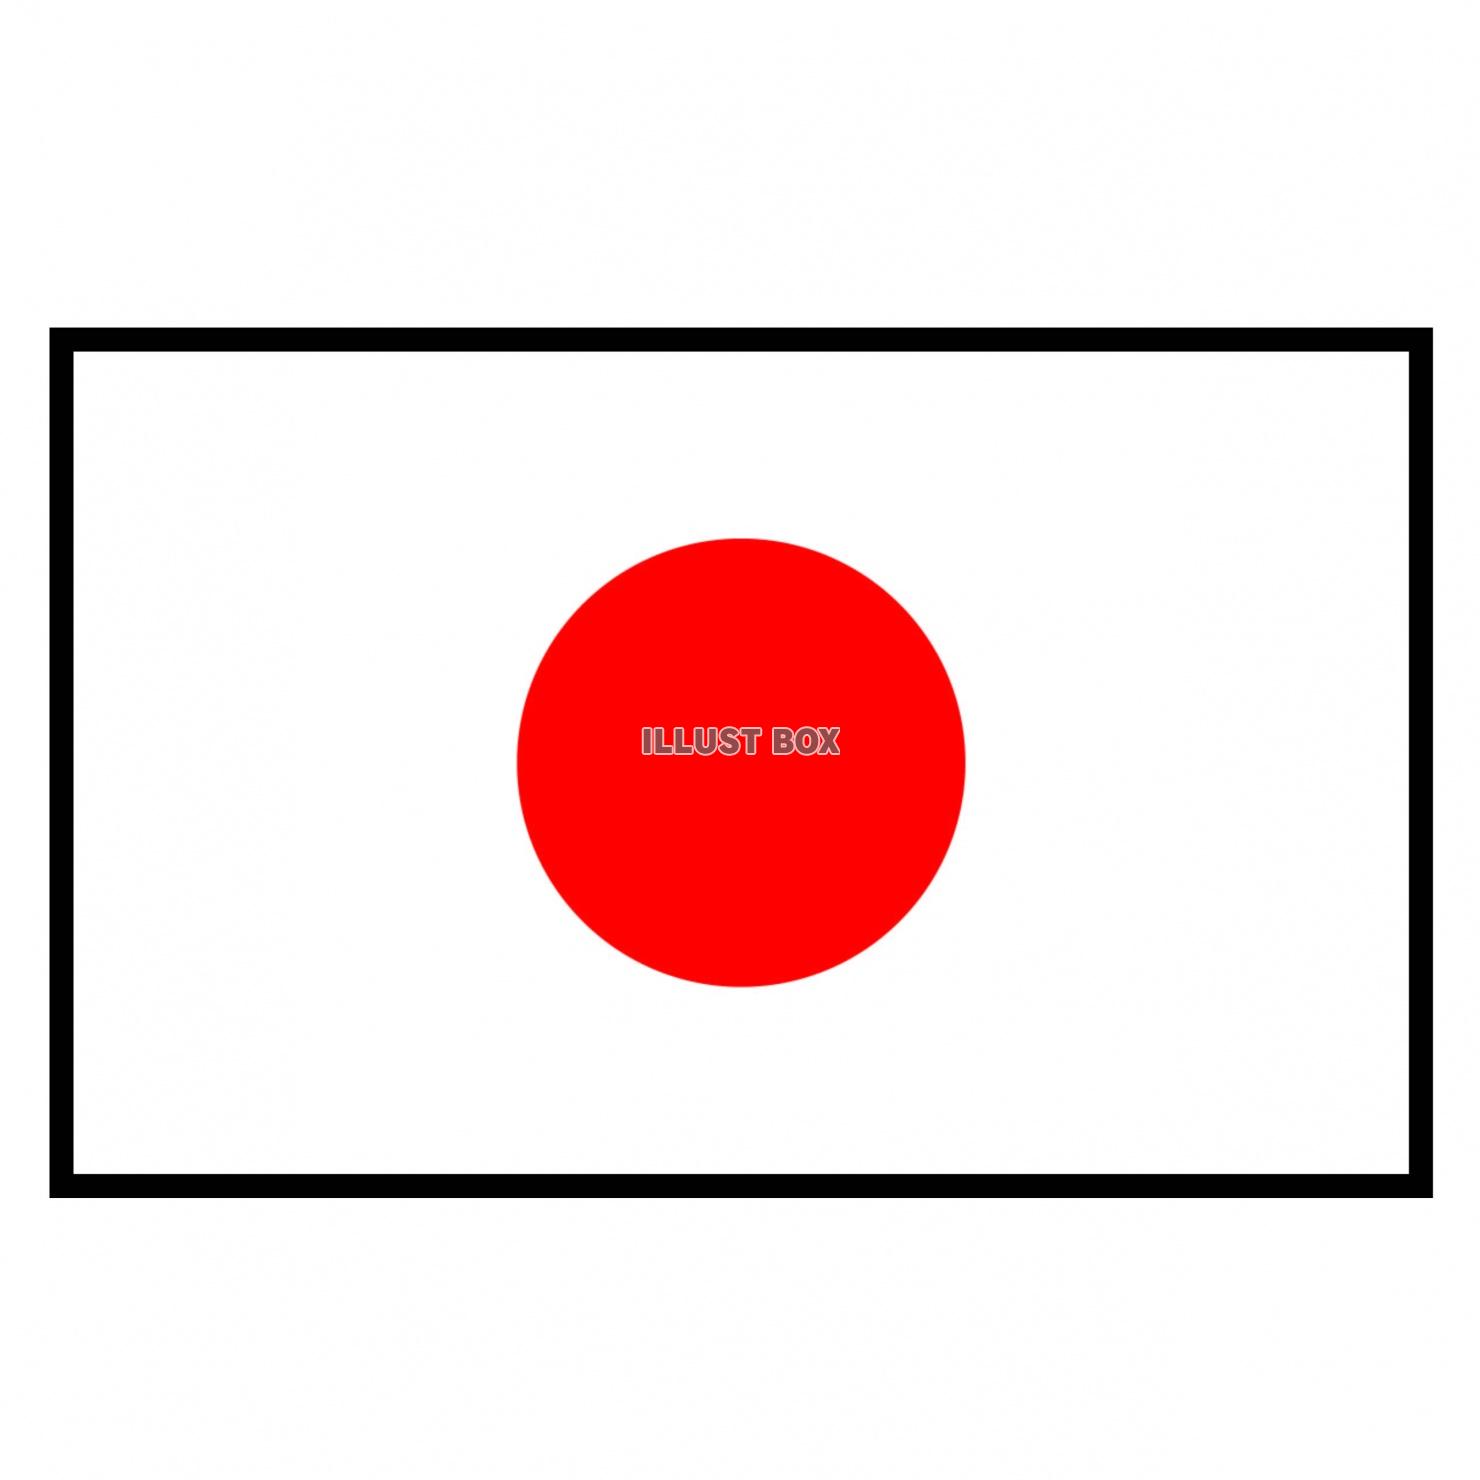 日本国旗のイラスト